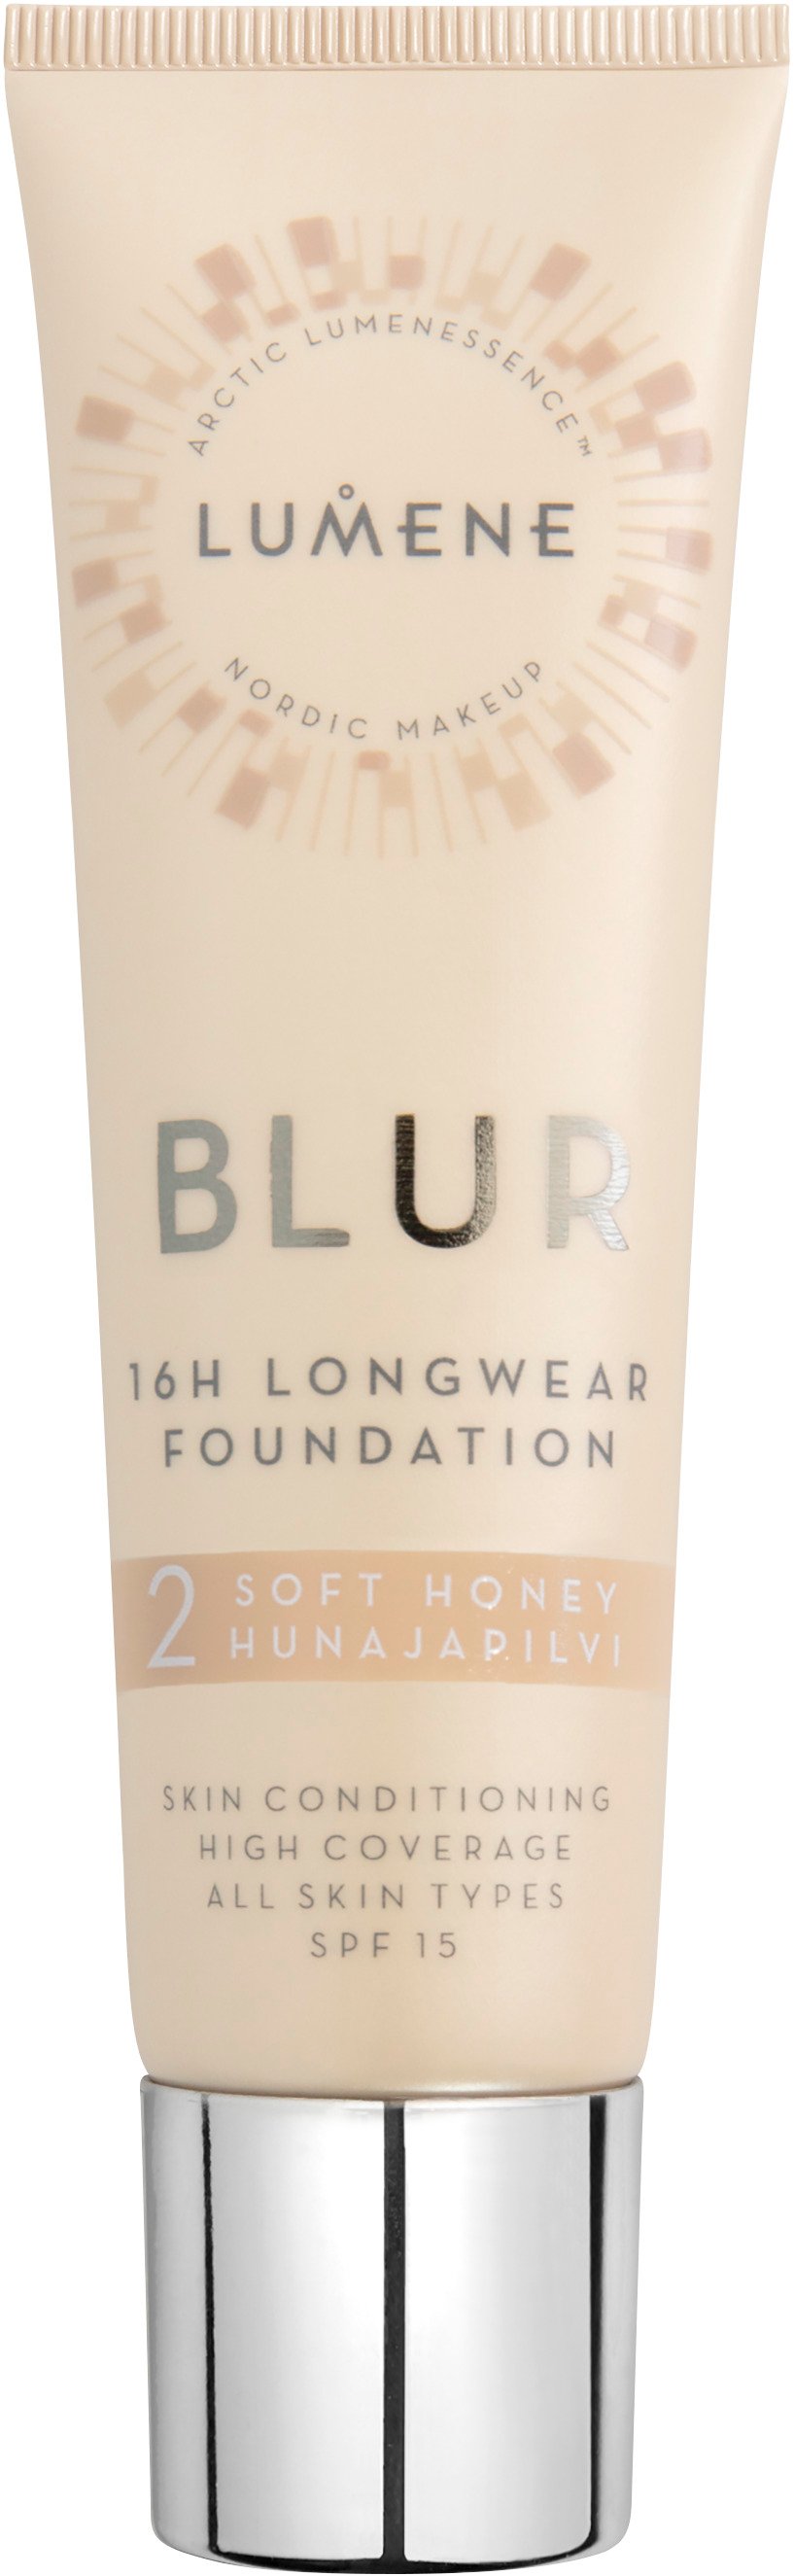 Lumene Blur 16h Longwear Foundation 2 30 ml